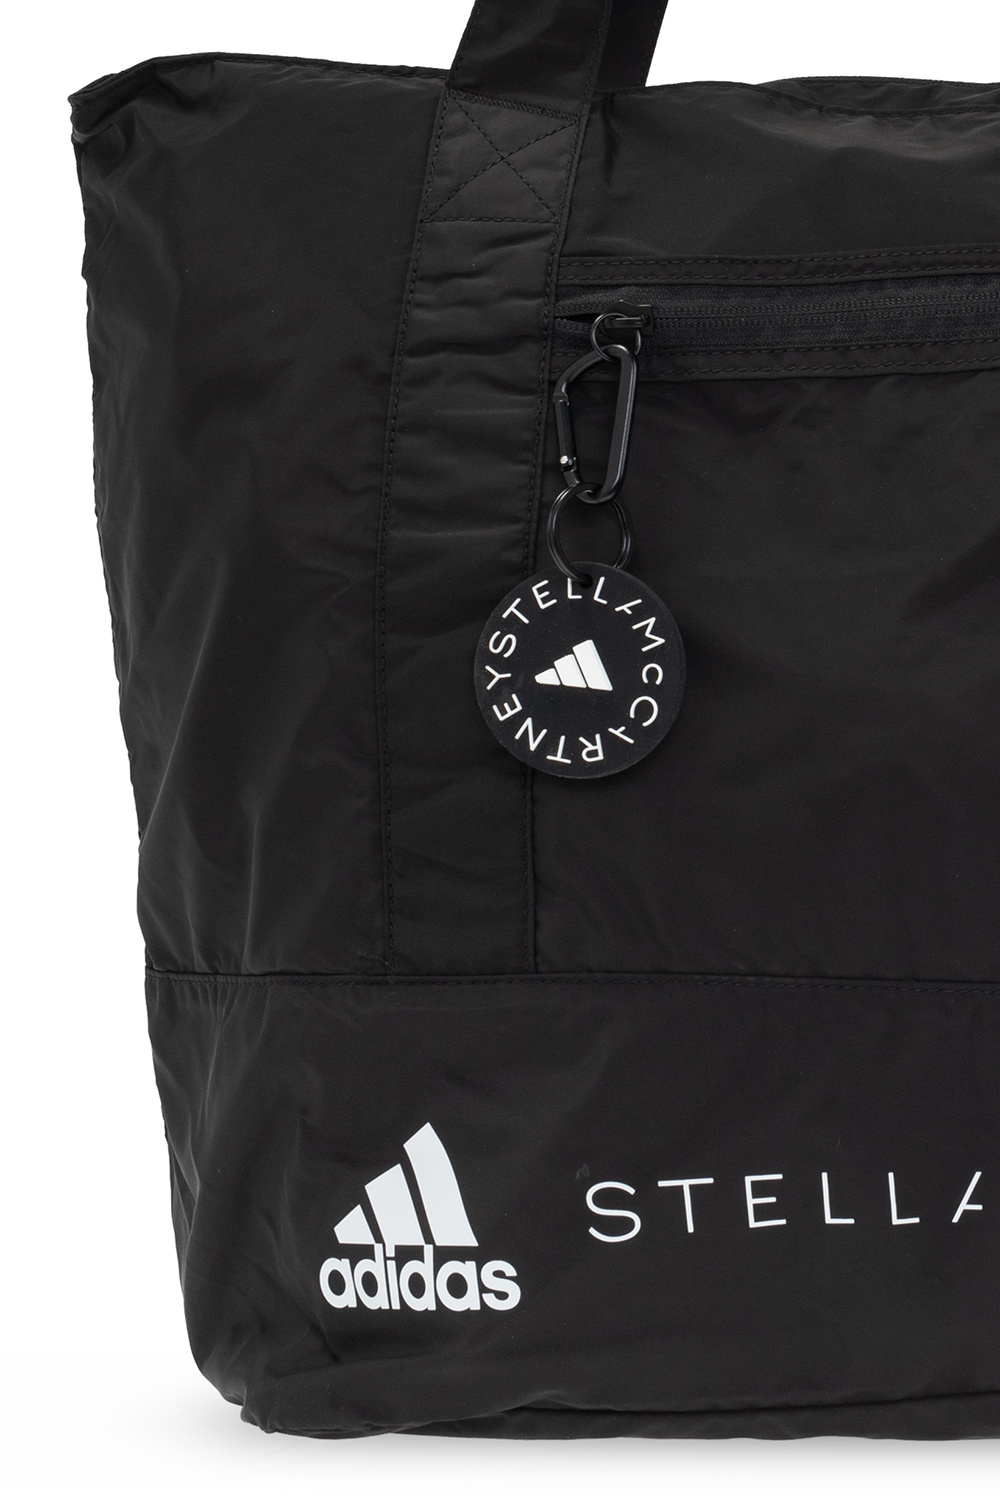 ADIDAS by Stella McCartney Shoulder bag with logo